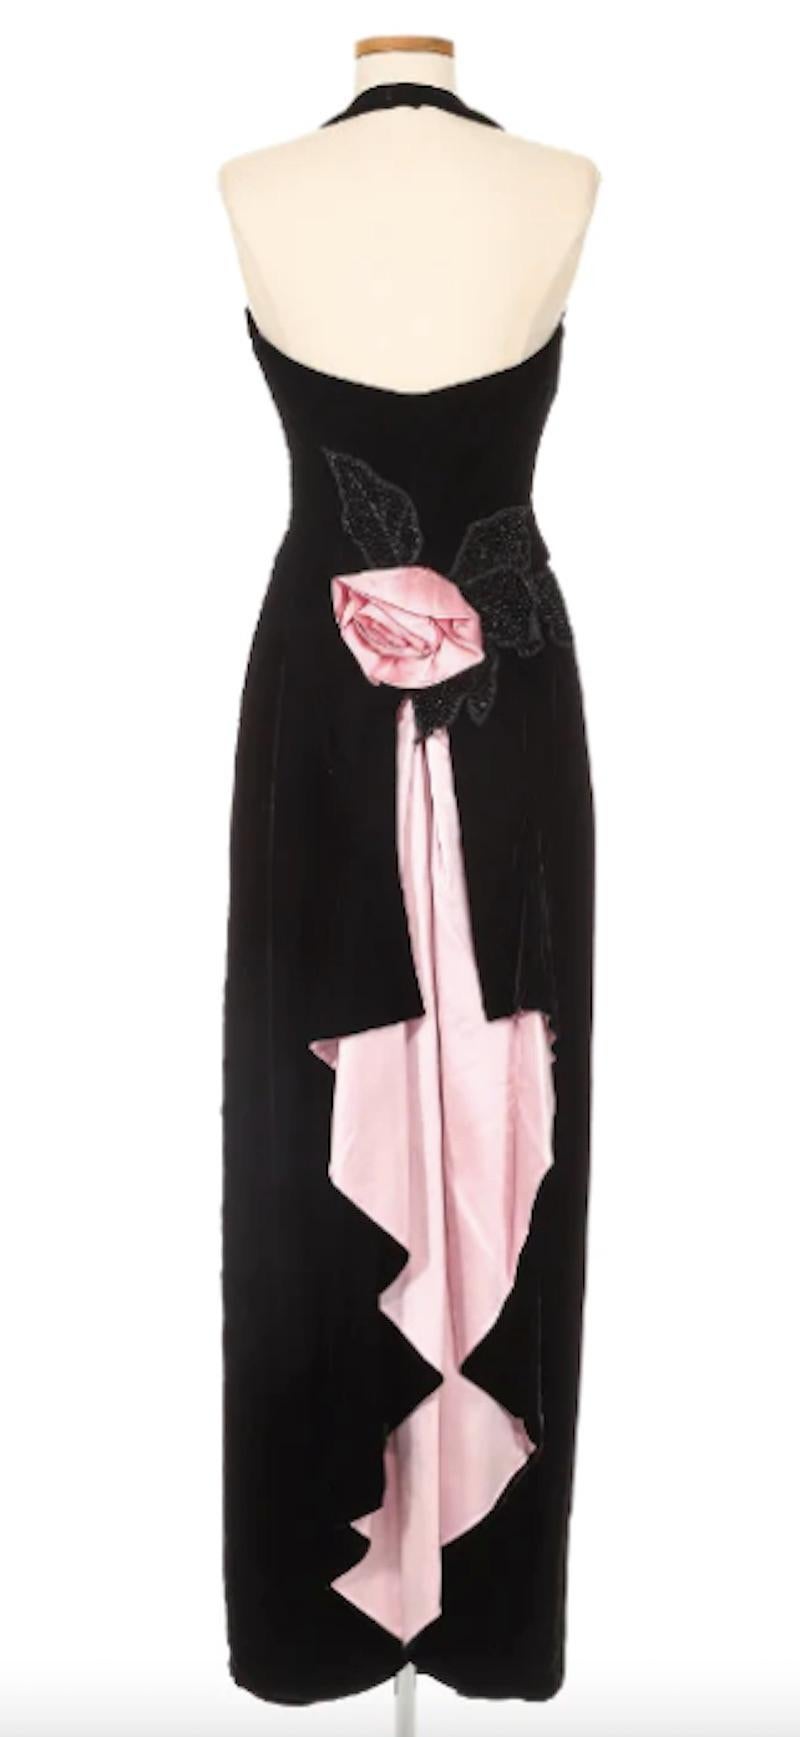 Paul-Louis Orrier Robe en velours noir avec fleur en soie rose. Le couturier Paul-Louis/One, qui s'est fait connaître dans les années 1970, était célèbre pour avoir habillé les personnages les plus audacieux de son époque, notamment Liza Minnelli.